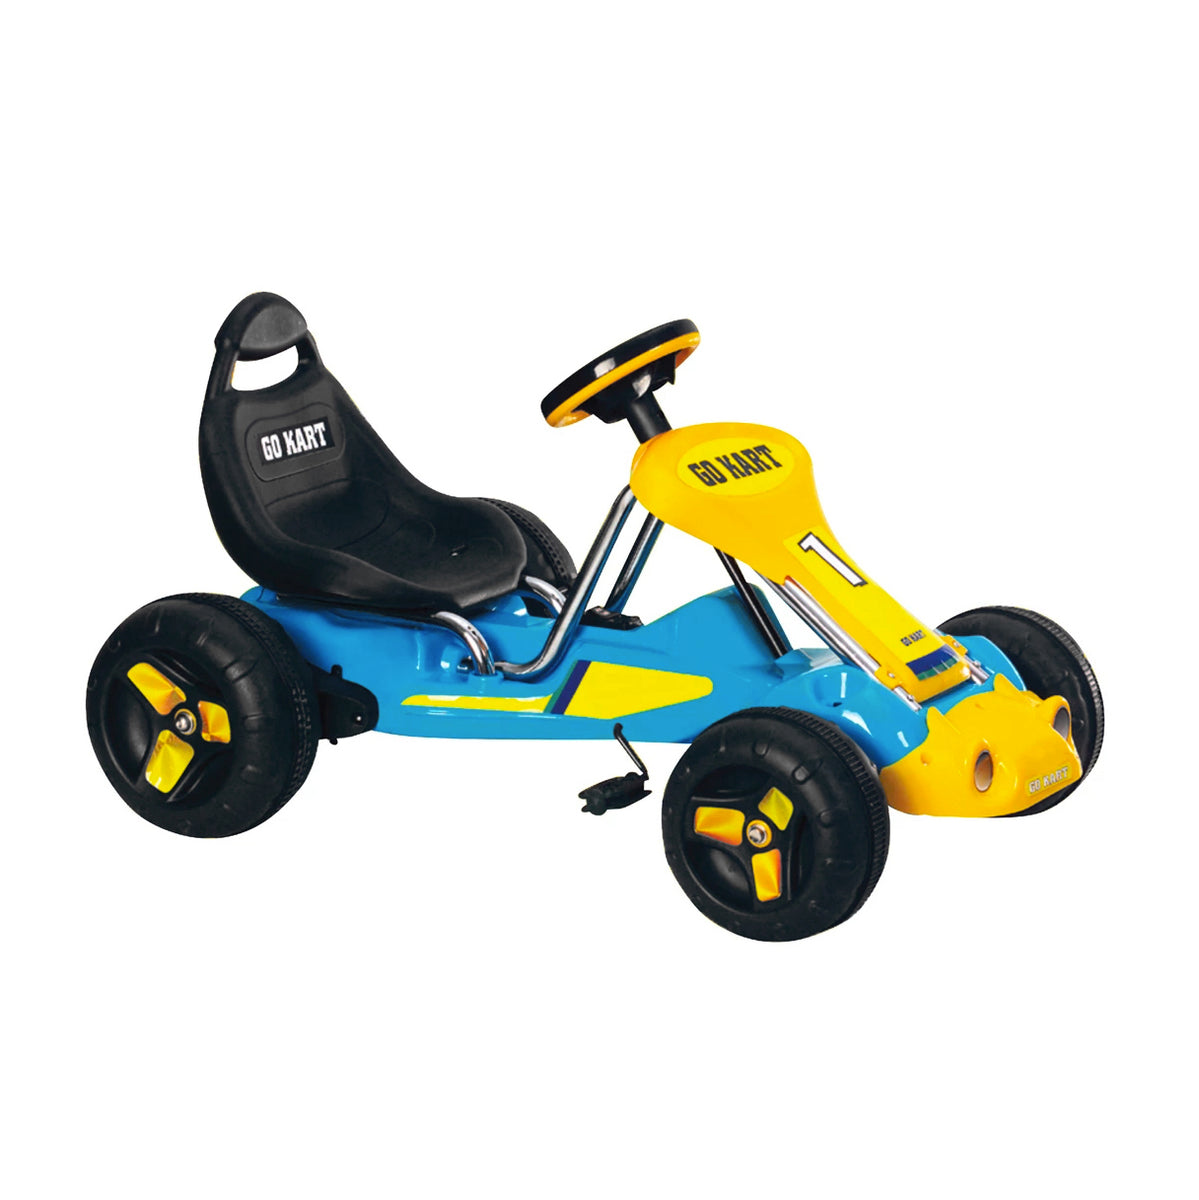 Pedal Powered Go-Kart for Children (Black) Ride & Steer/ 4-Wheel Vehicle